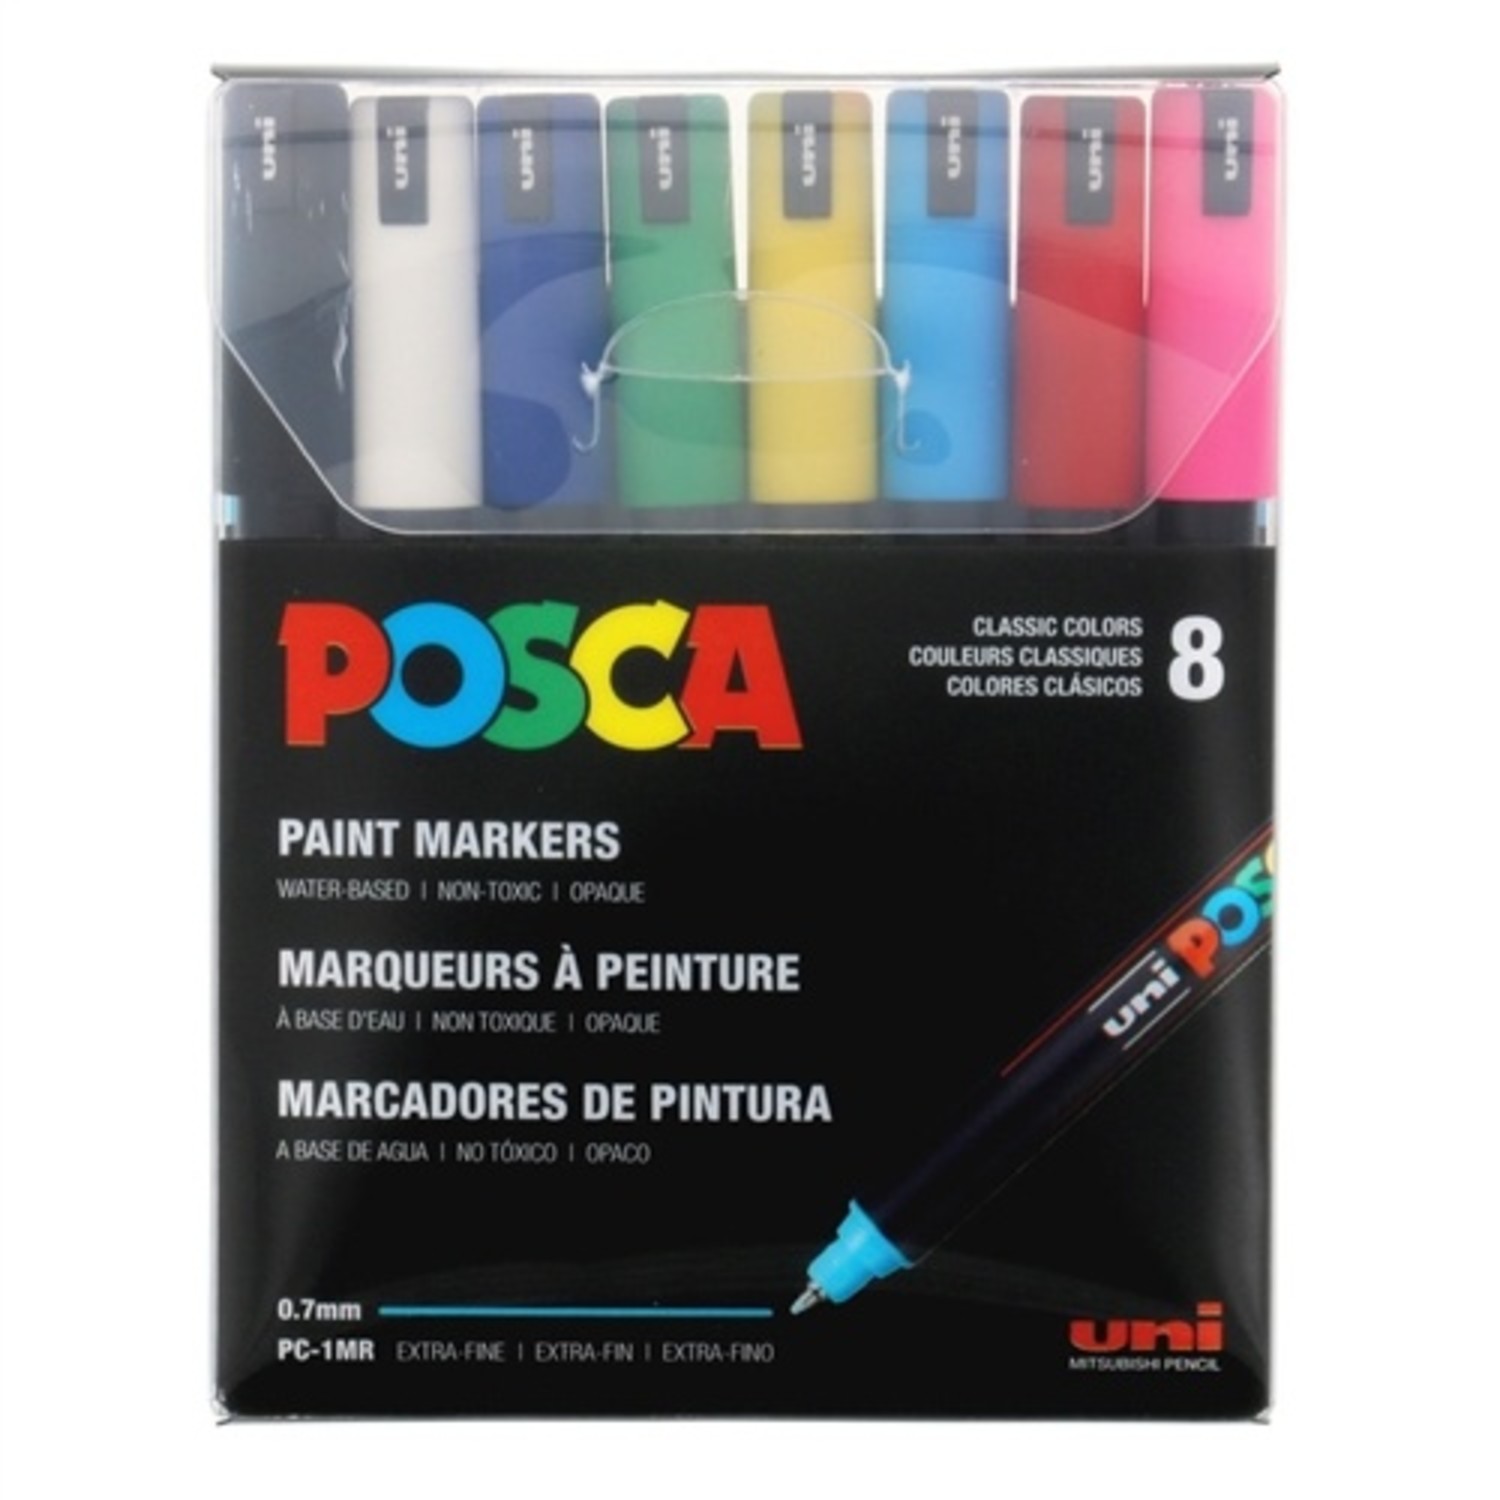 Set de 8 marcadores POSCA - 5M - DARK COLORS